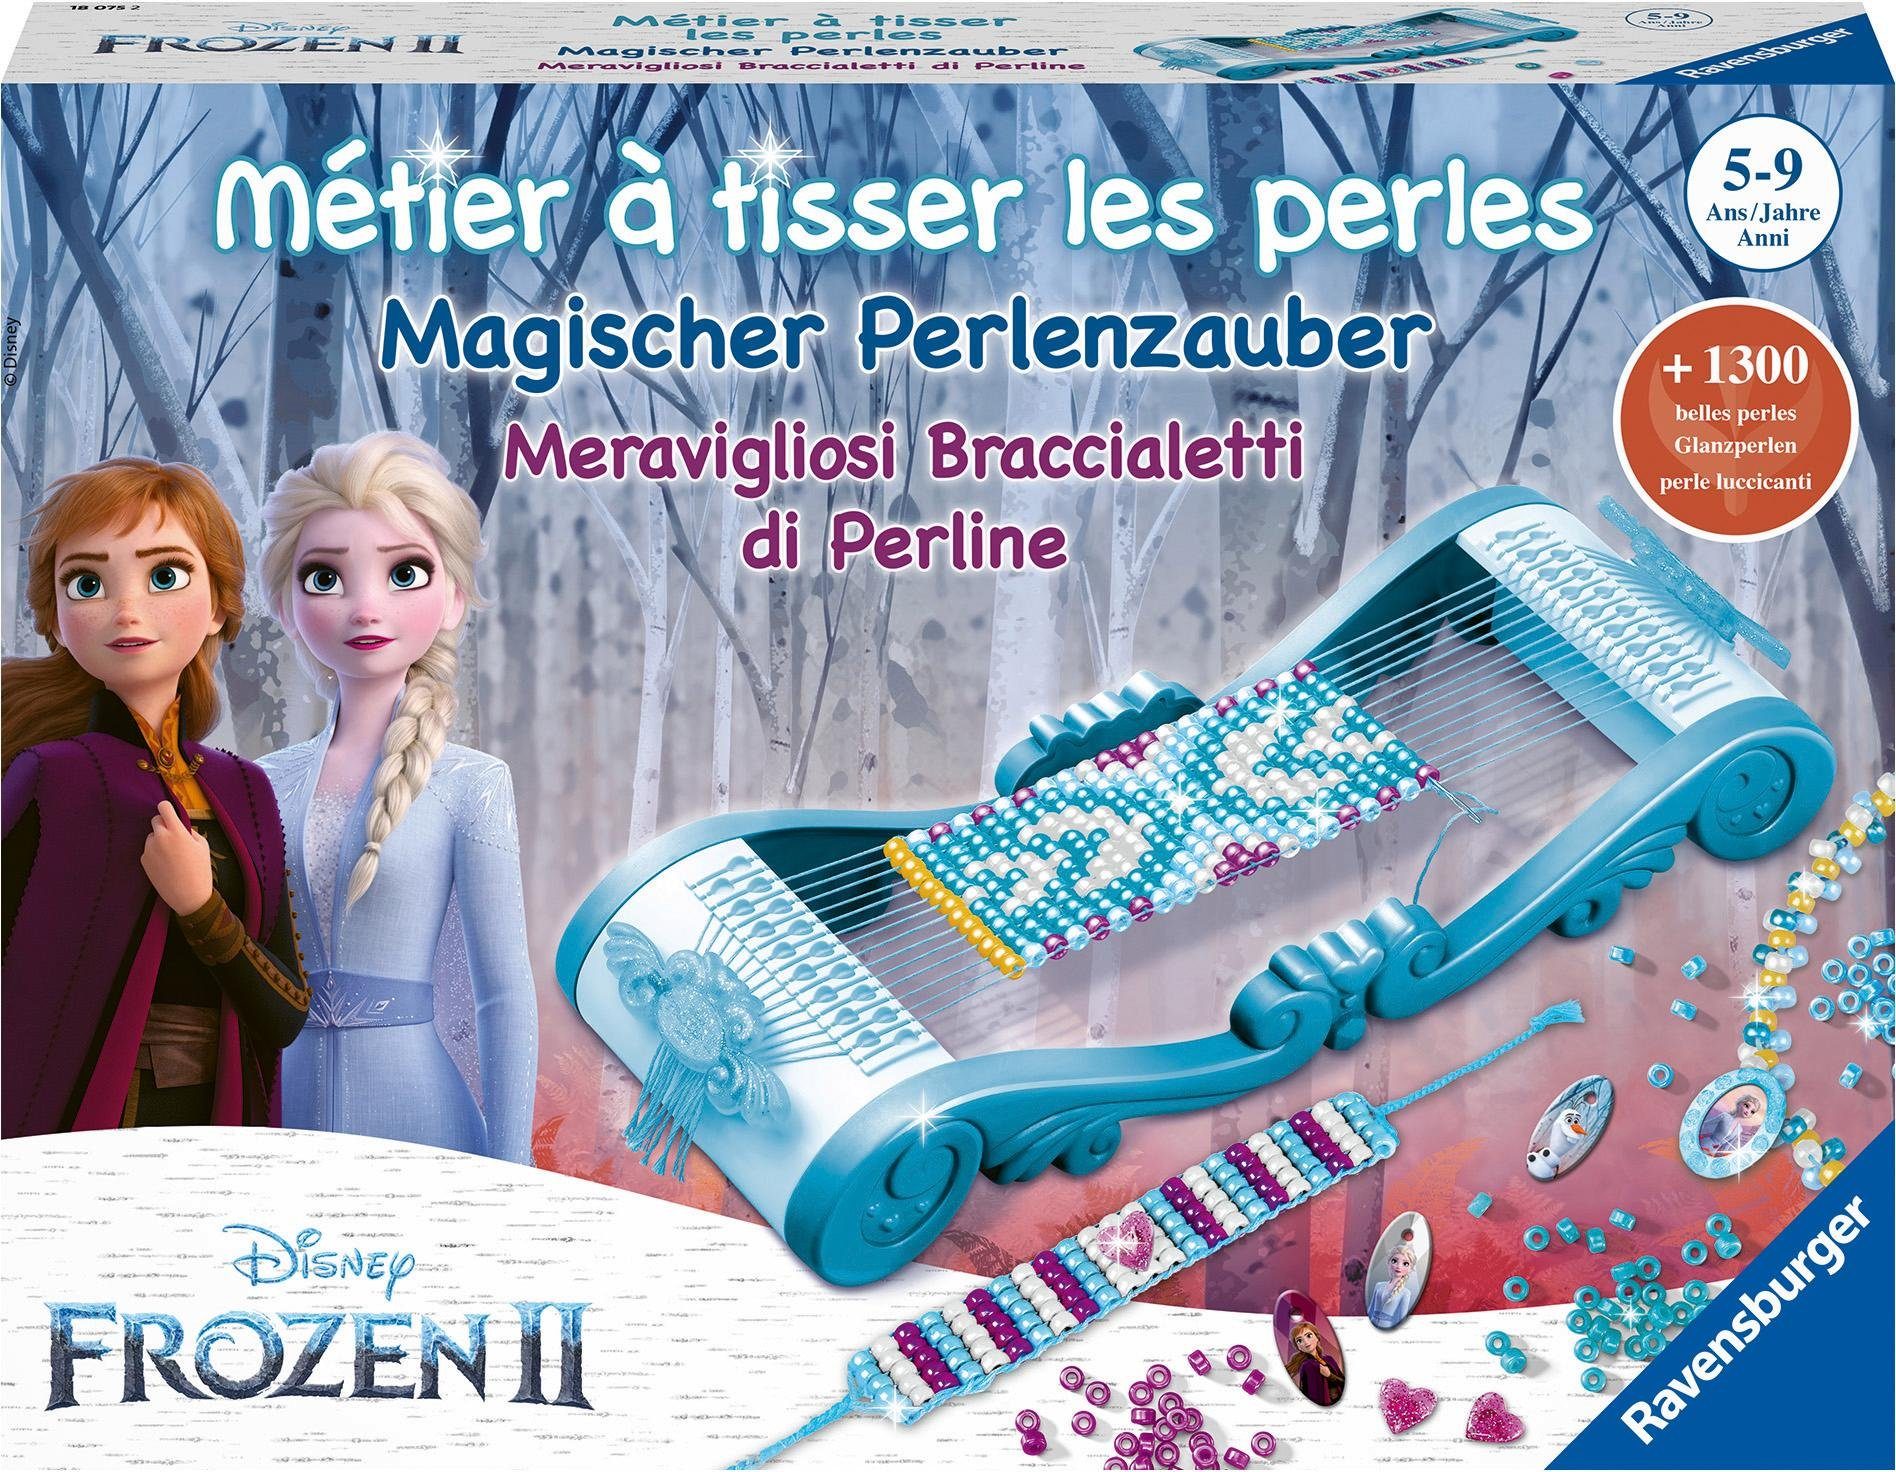 Image of Magischer Perlenzauber Frozen